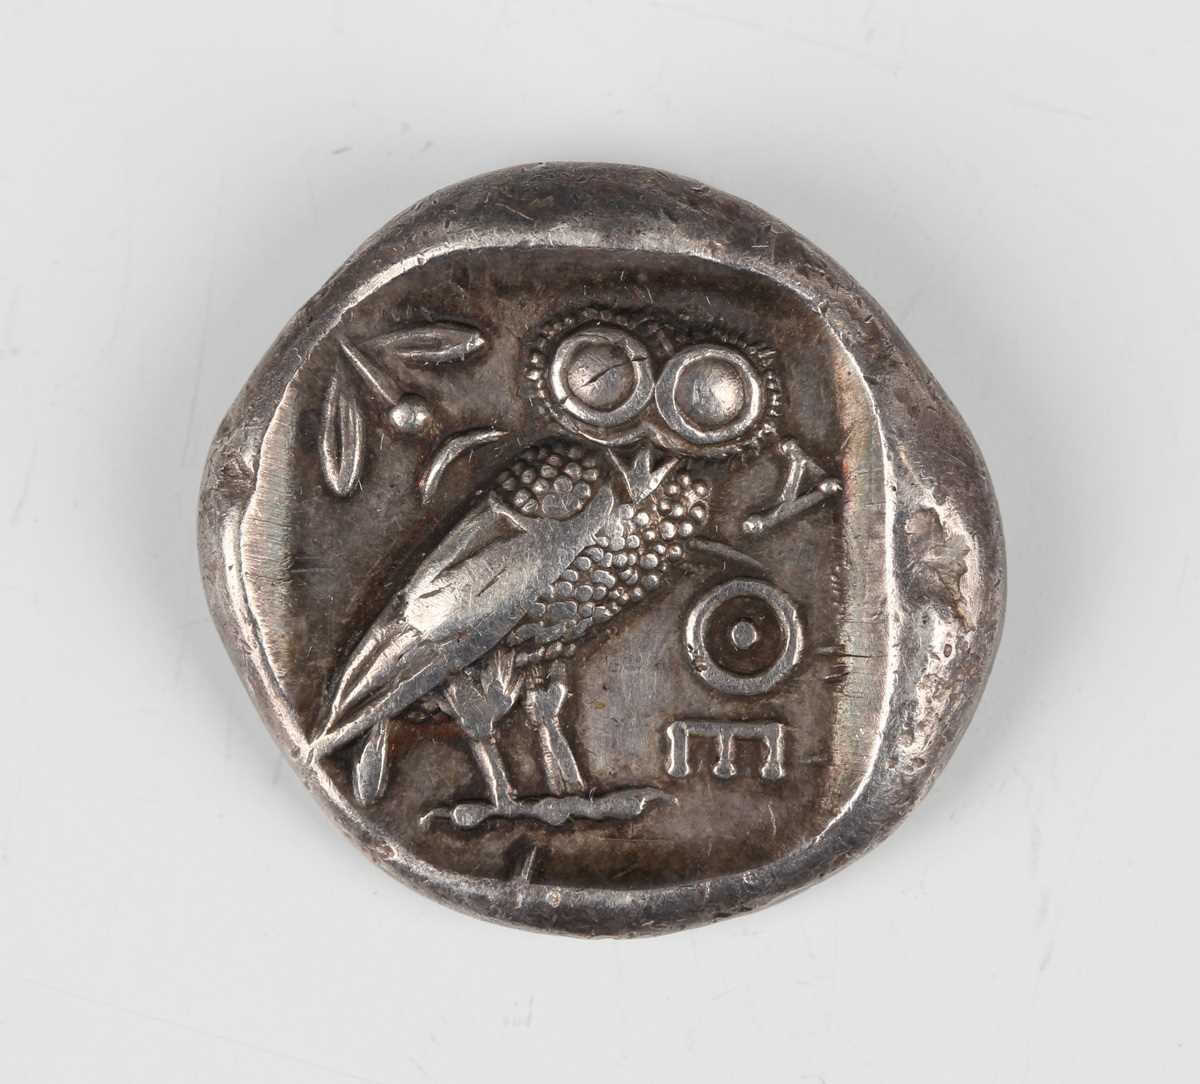 A Greece, Attica, Athens silver tetradrachm, circa 440-404 BC, obverse with head of Athena, - Image 2 of 2